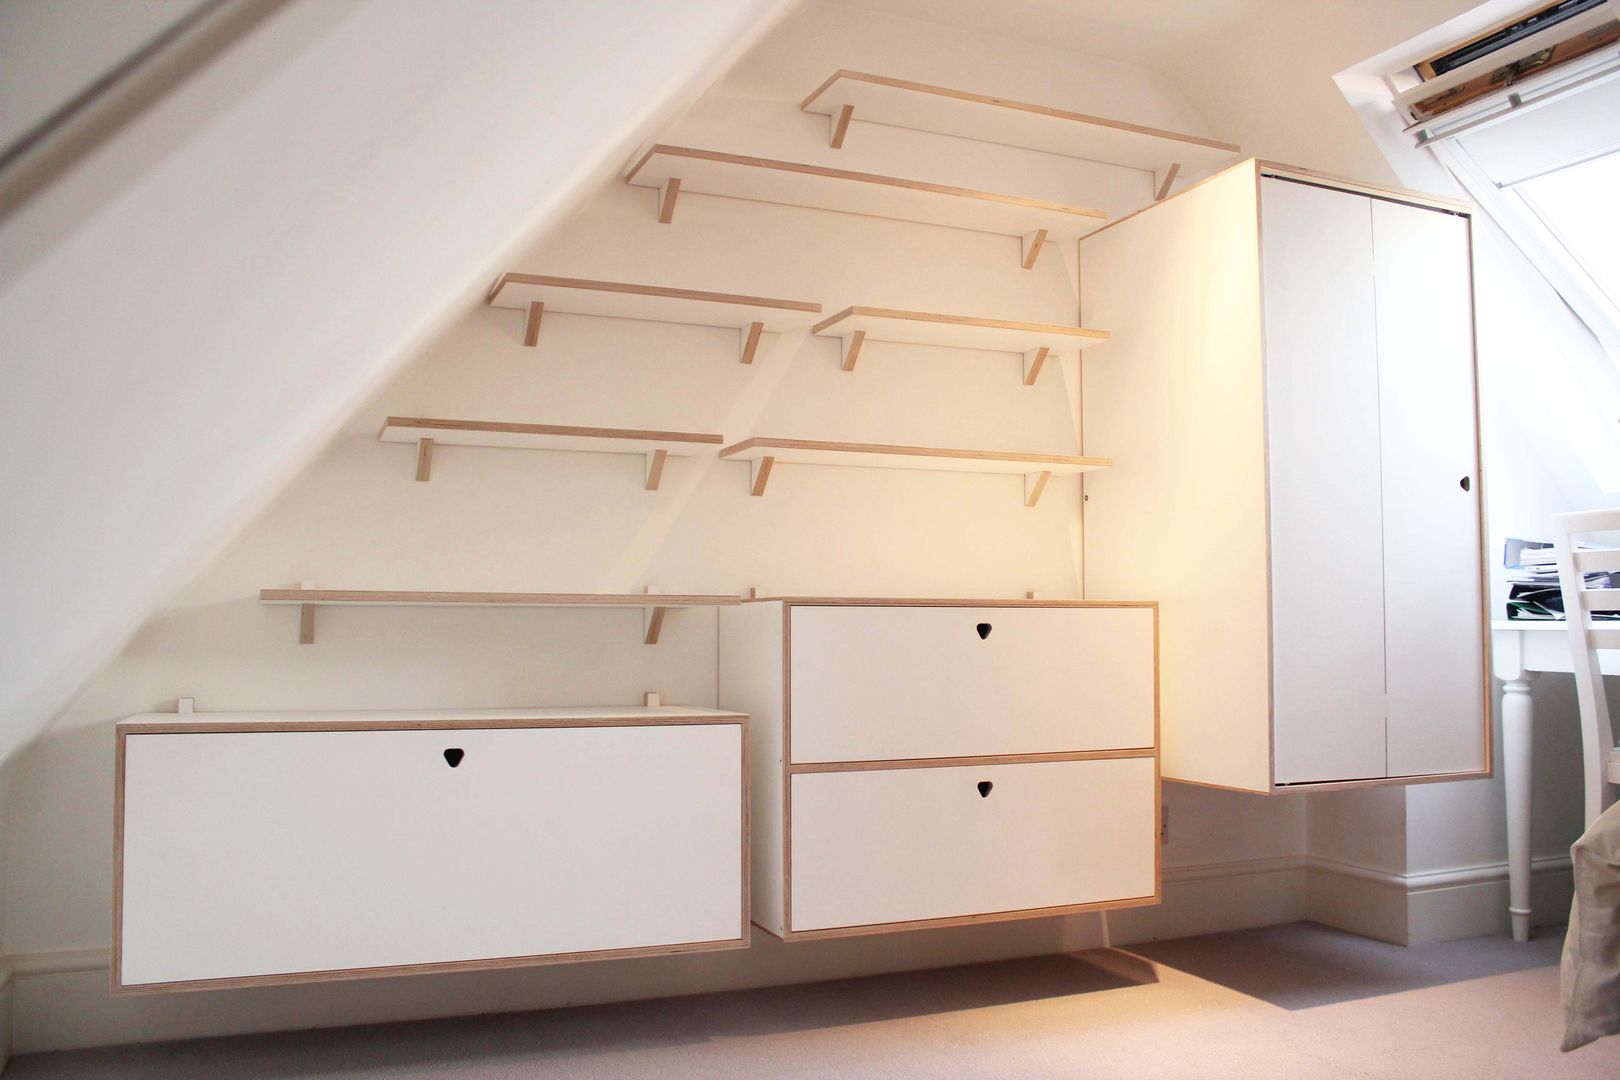 Full Shelving system with cabinets and wardrobe Happenstance Workshop Dormitorios modernos: Ideas, imágenes y decoración Contrachapado Placares y cómodas